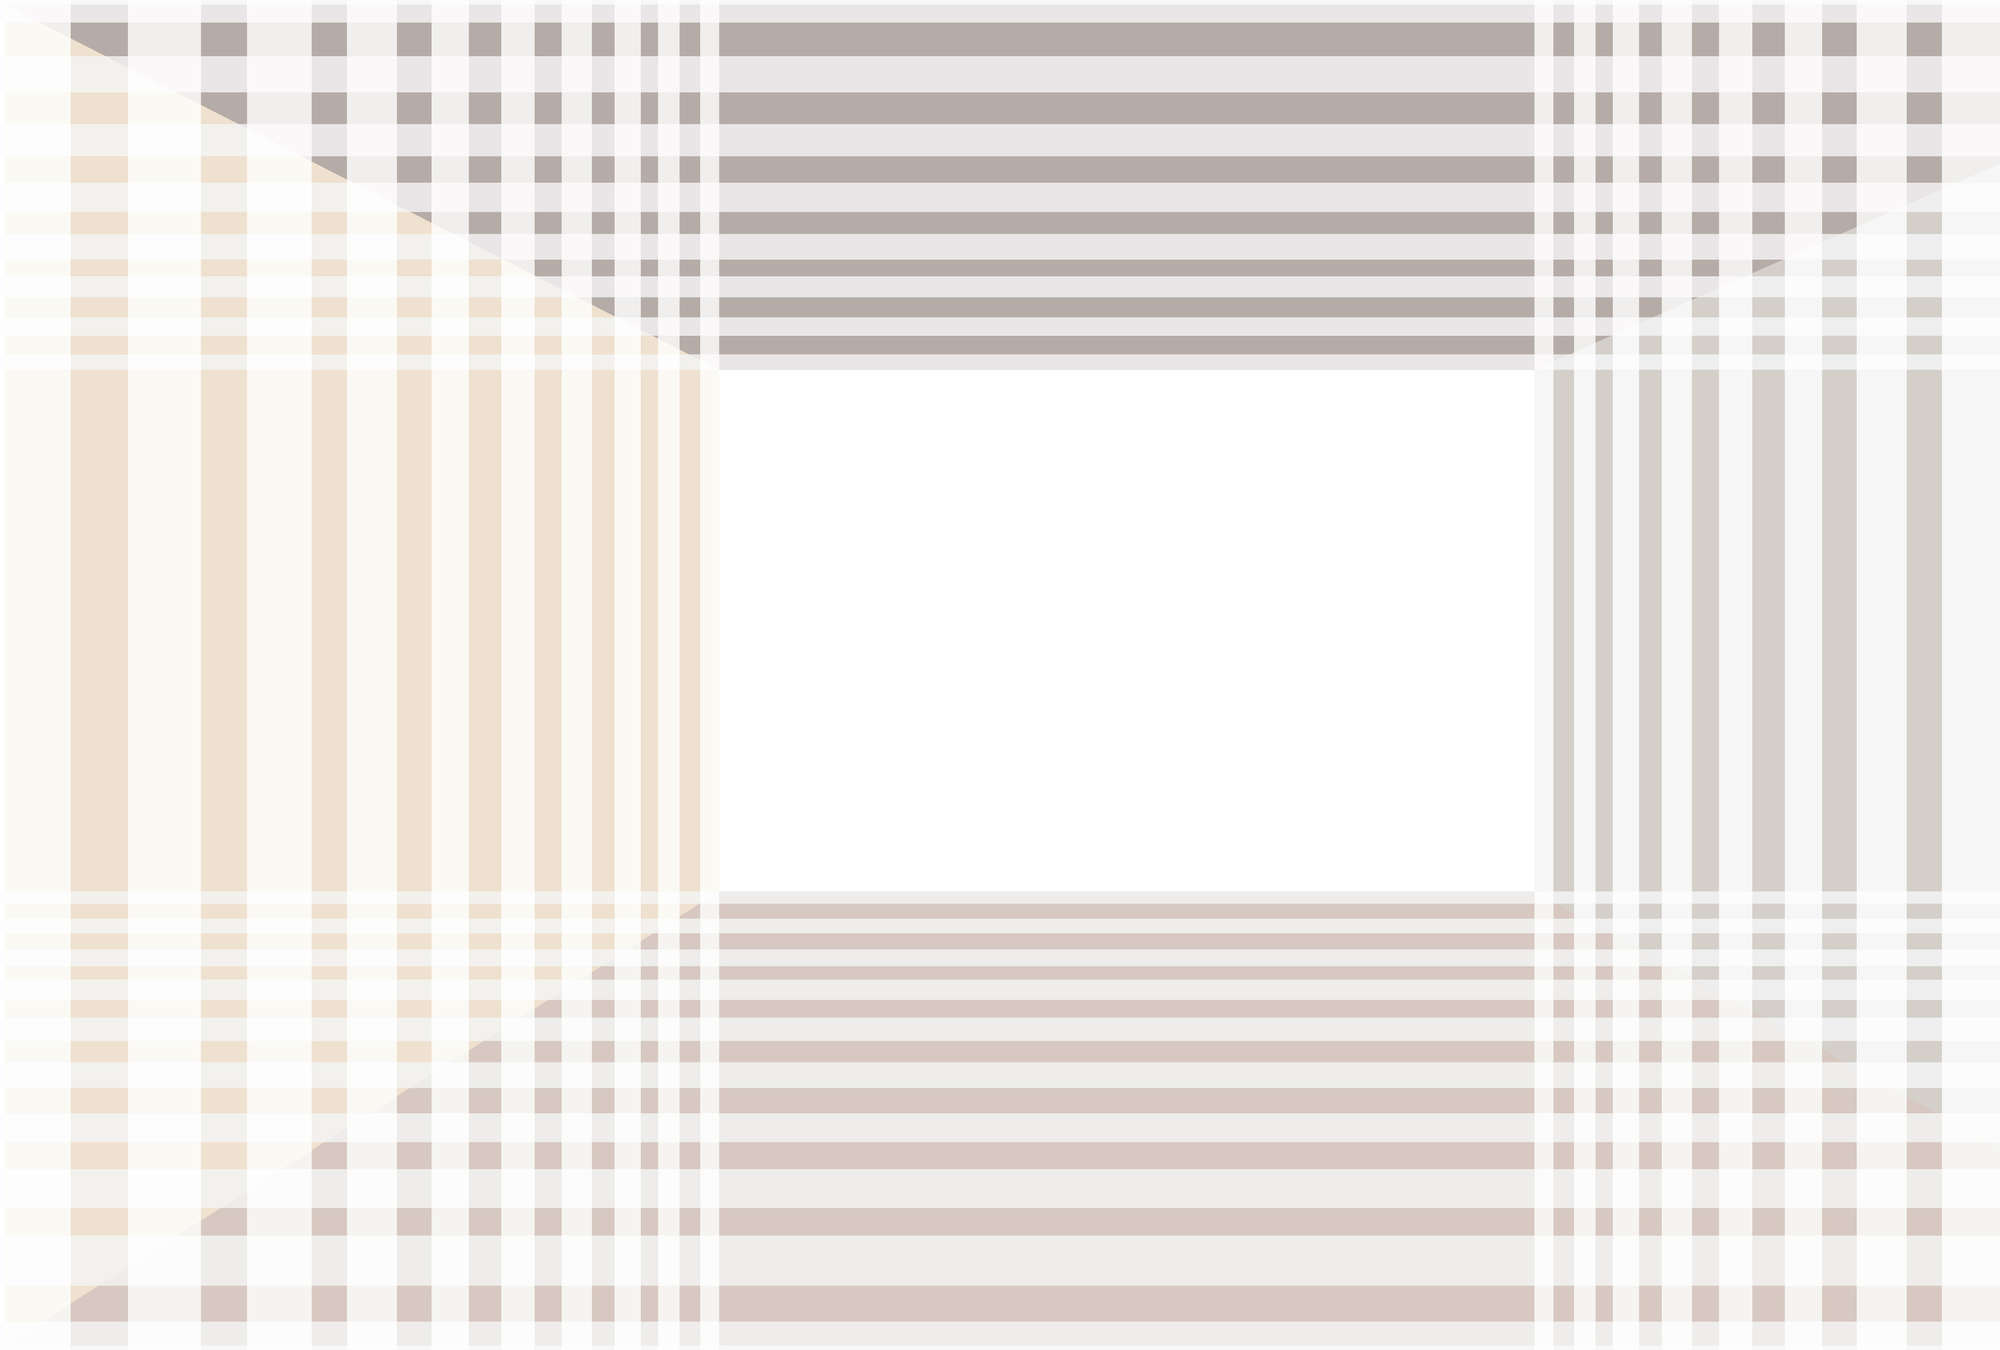             Minimalist stripe mural - white, grey, beige
        